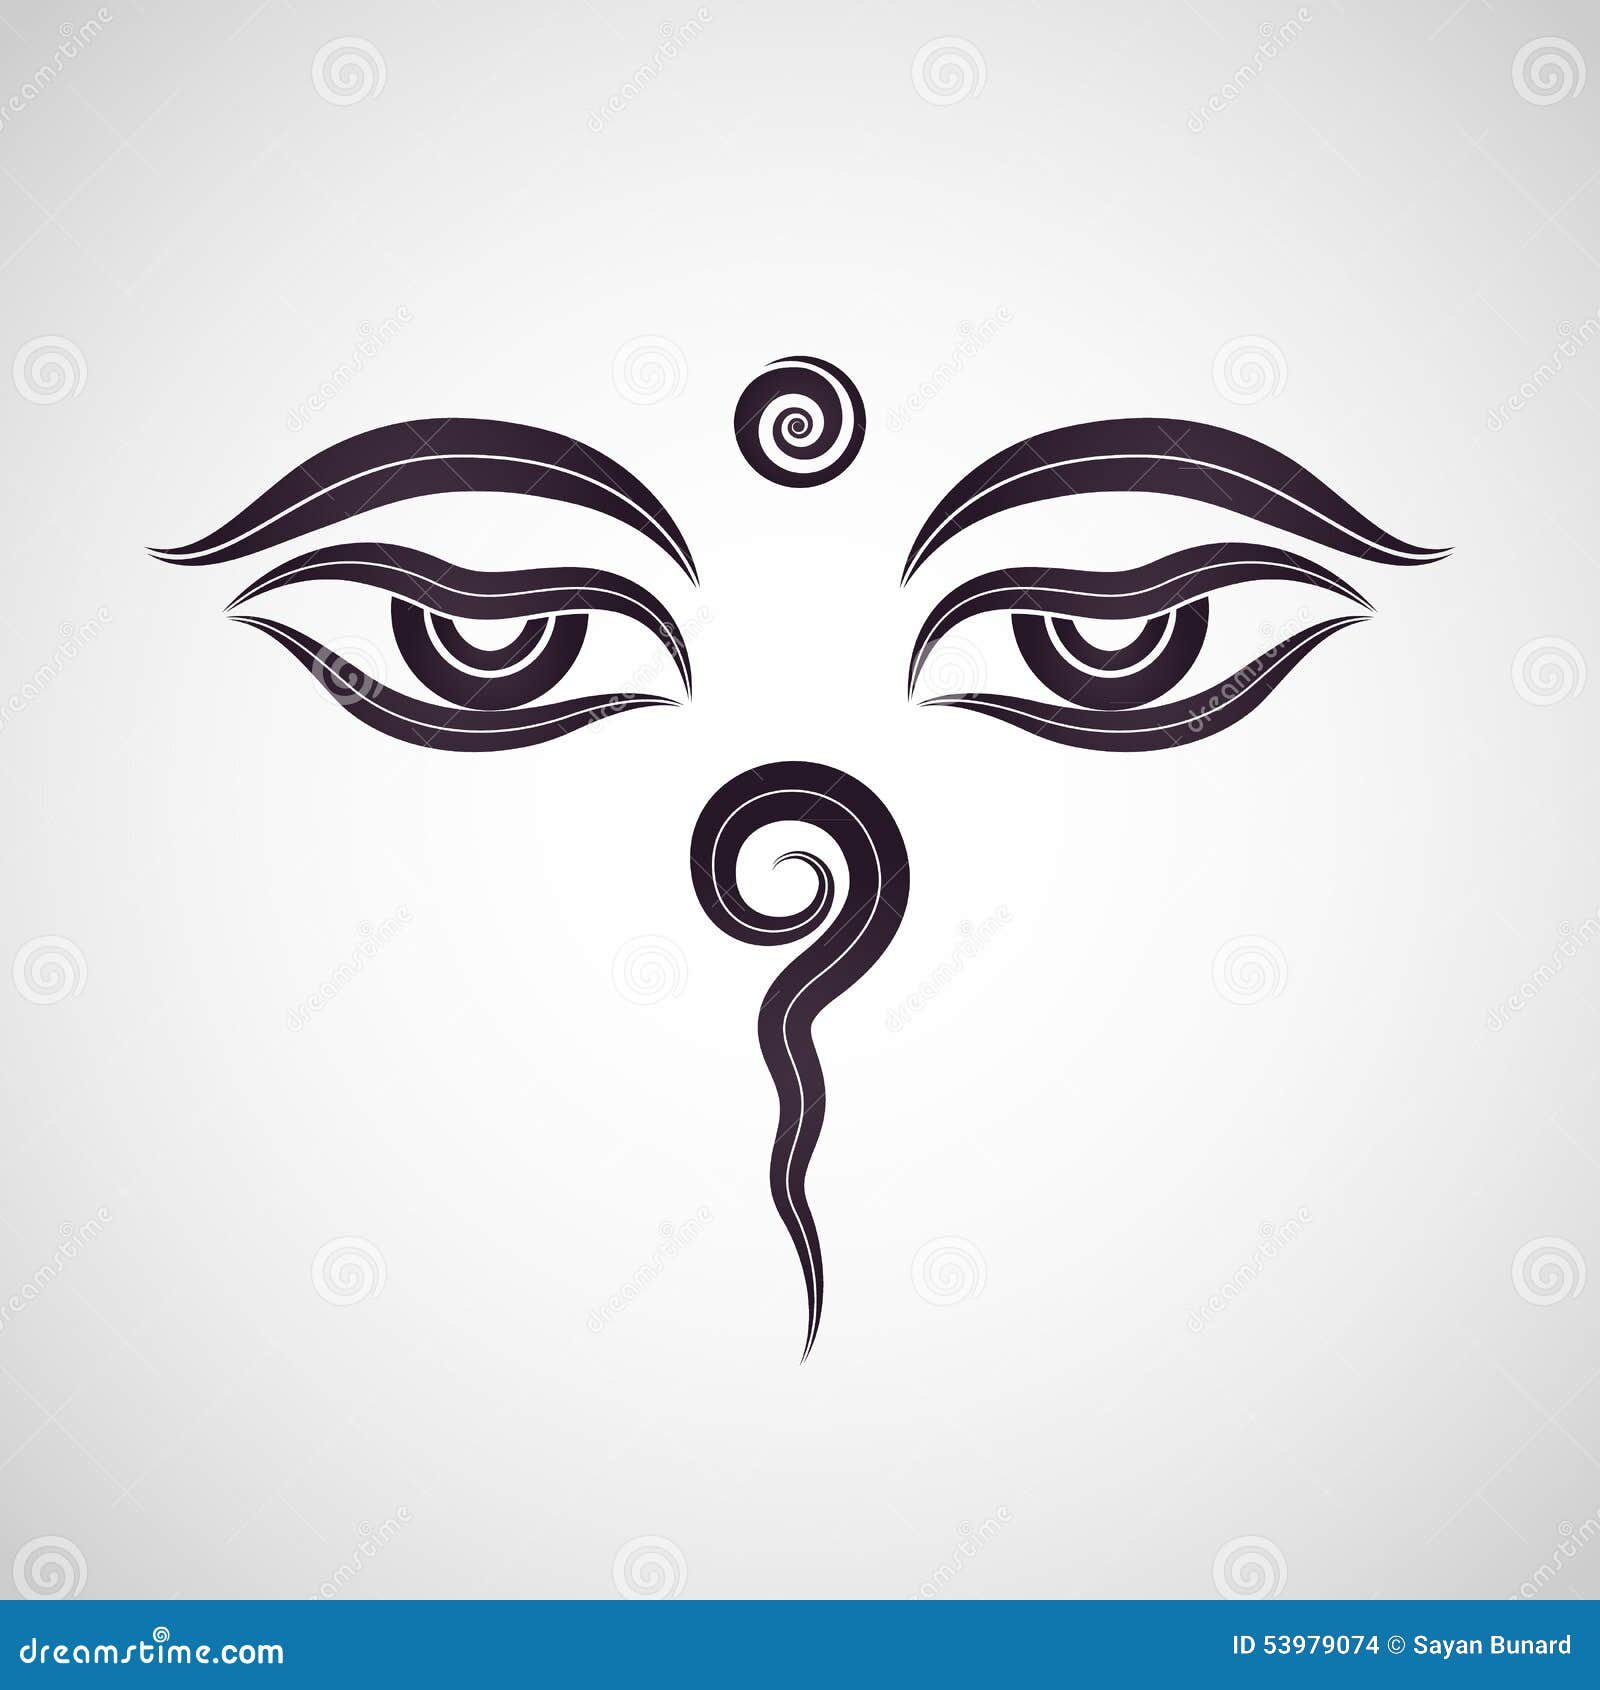 Buddha eyes, Nepal stock vector. Illustration of prayer - 53979074